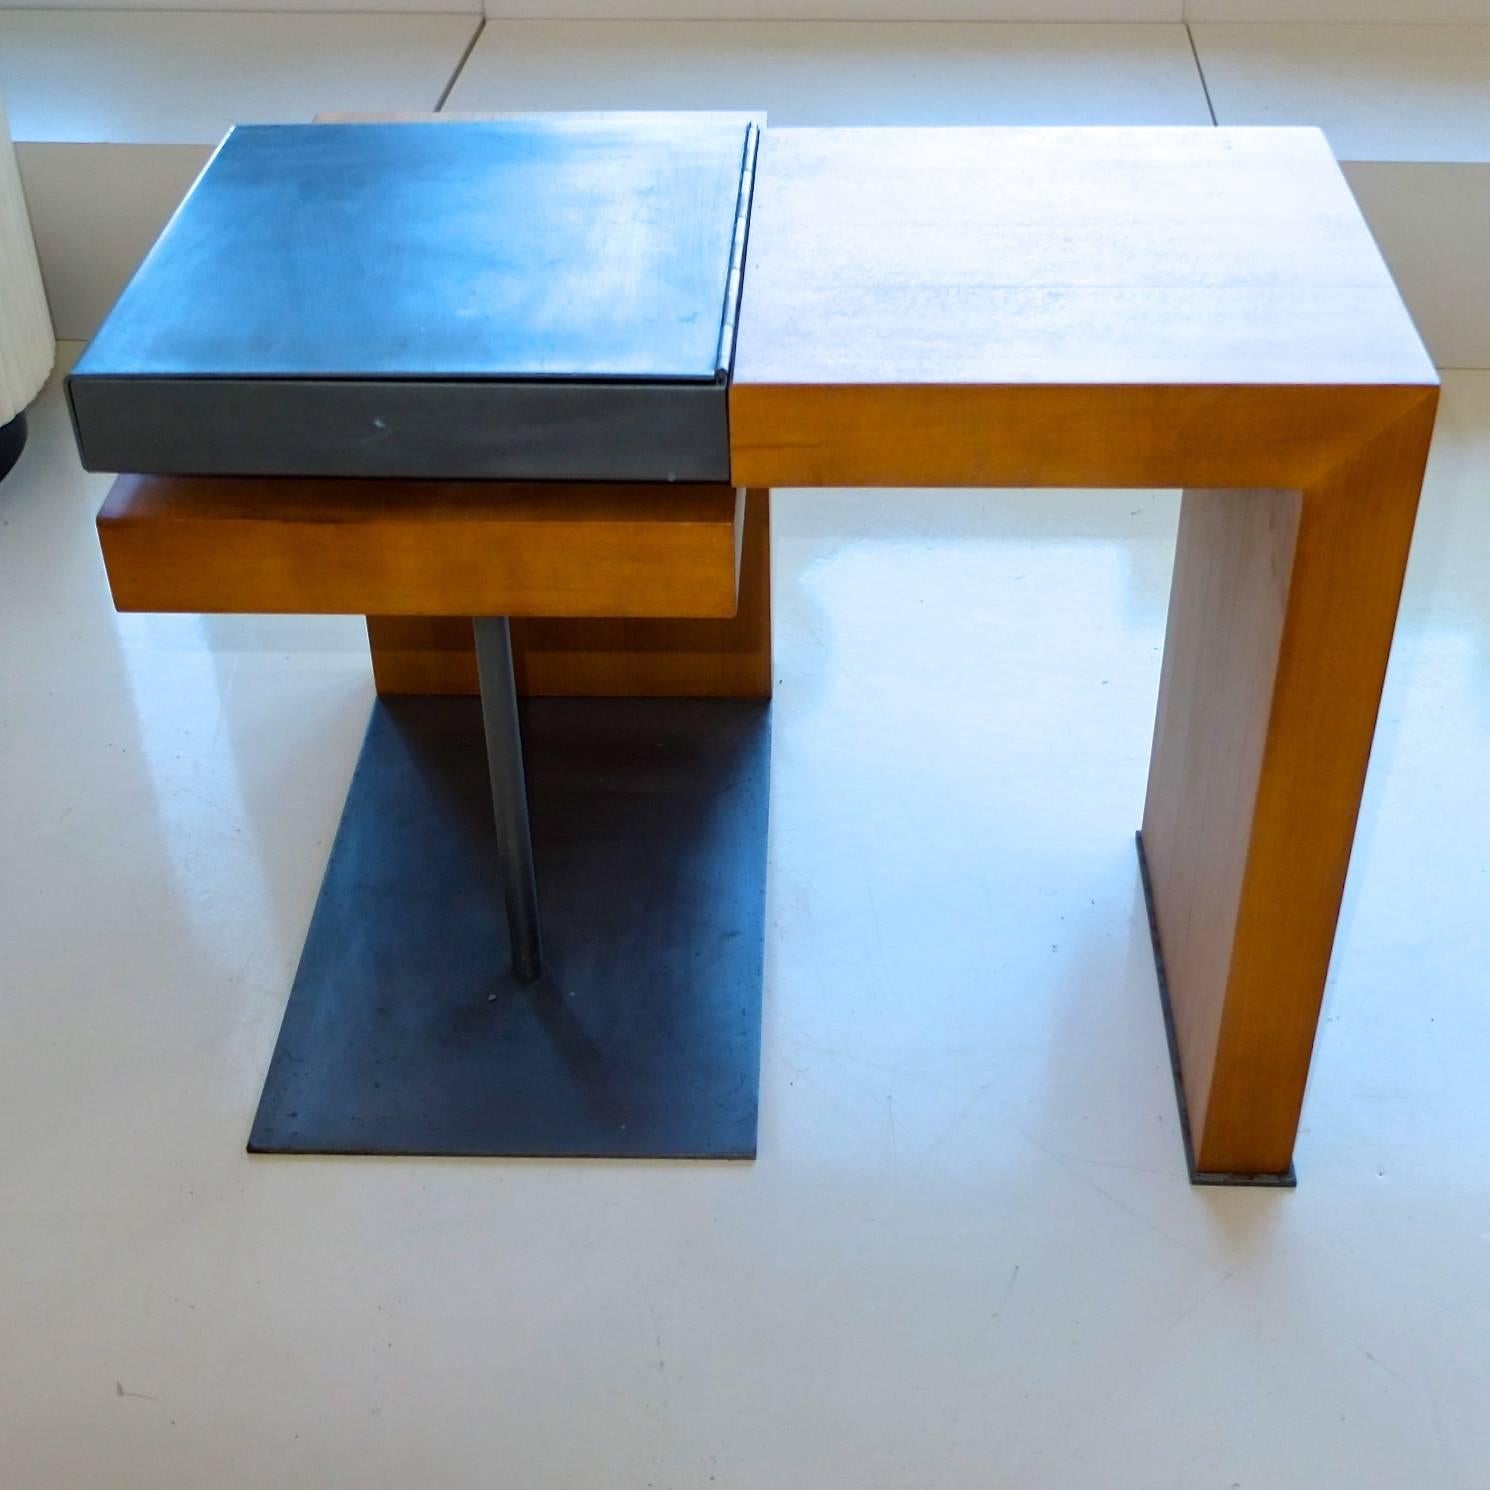 Rare Multi-Position Table by Ecart, Paris 1